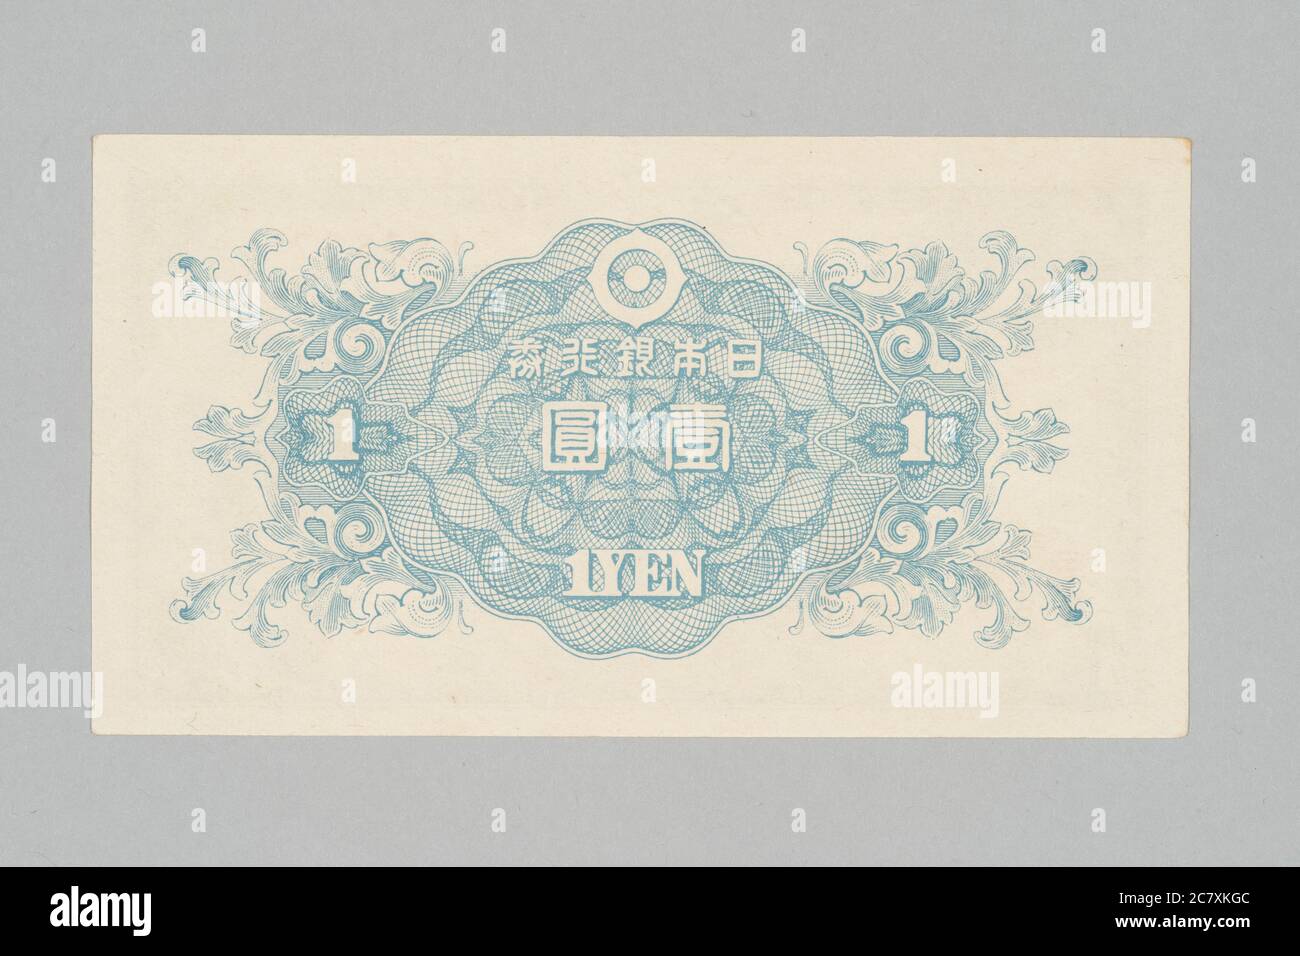 Parte trasera del billete japonés 1 yen, diseño Sontoku Ninomiya, Colección privada Foto de stock